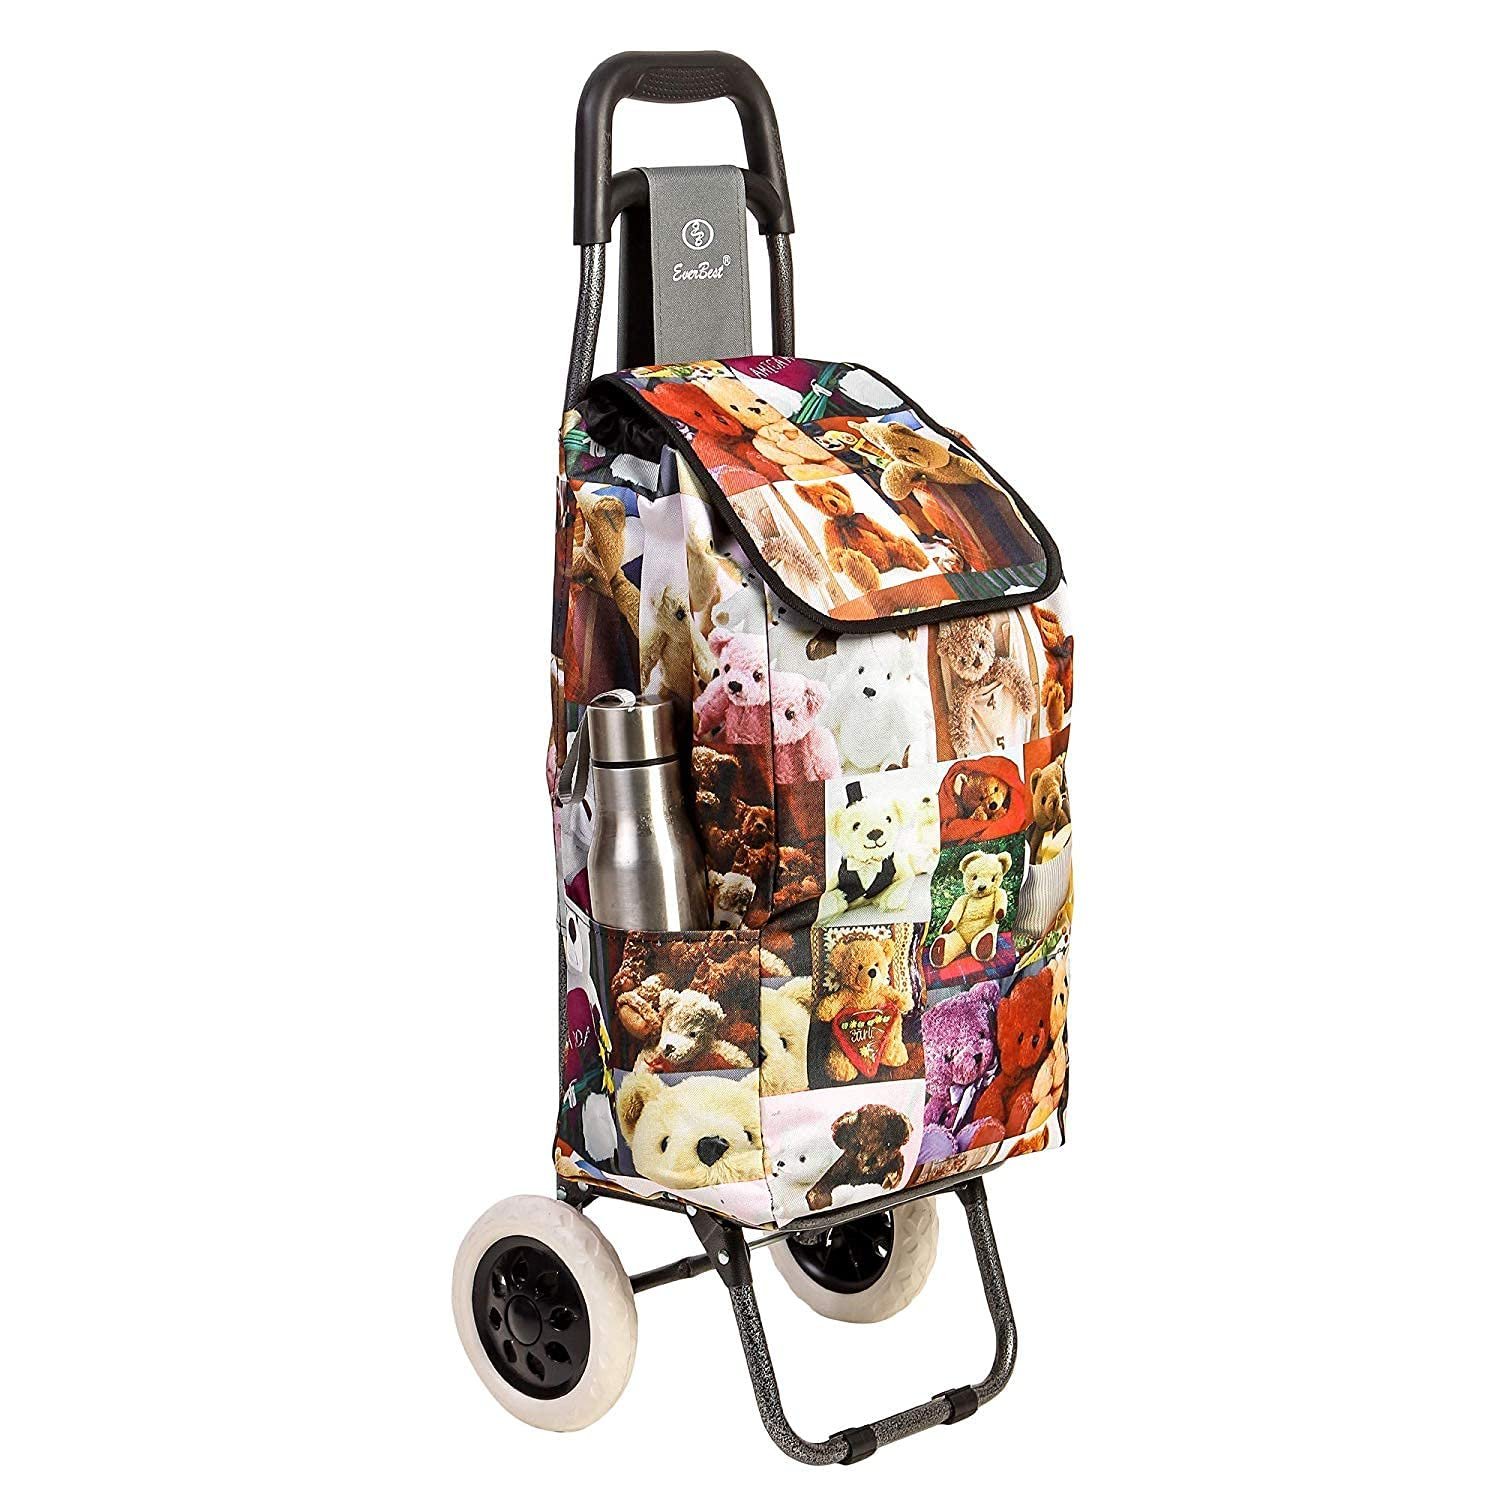 25L Shopping Trolley Lightweight Folding 2 Wheel Cart Luggage Waterproof  Grocery | eBay